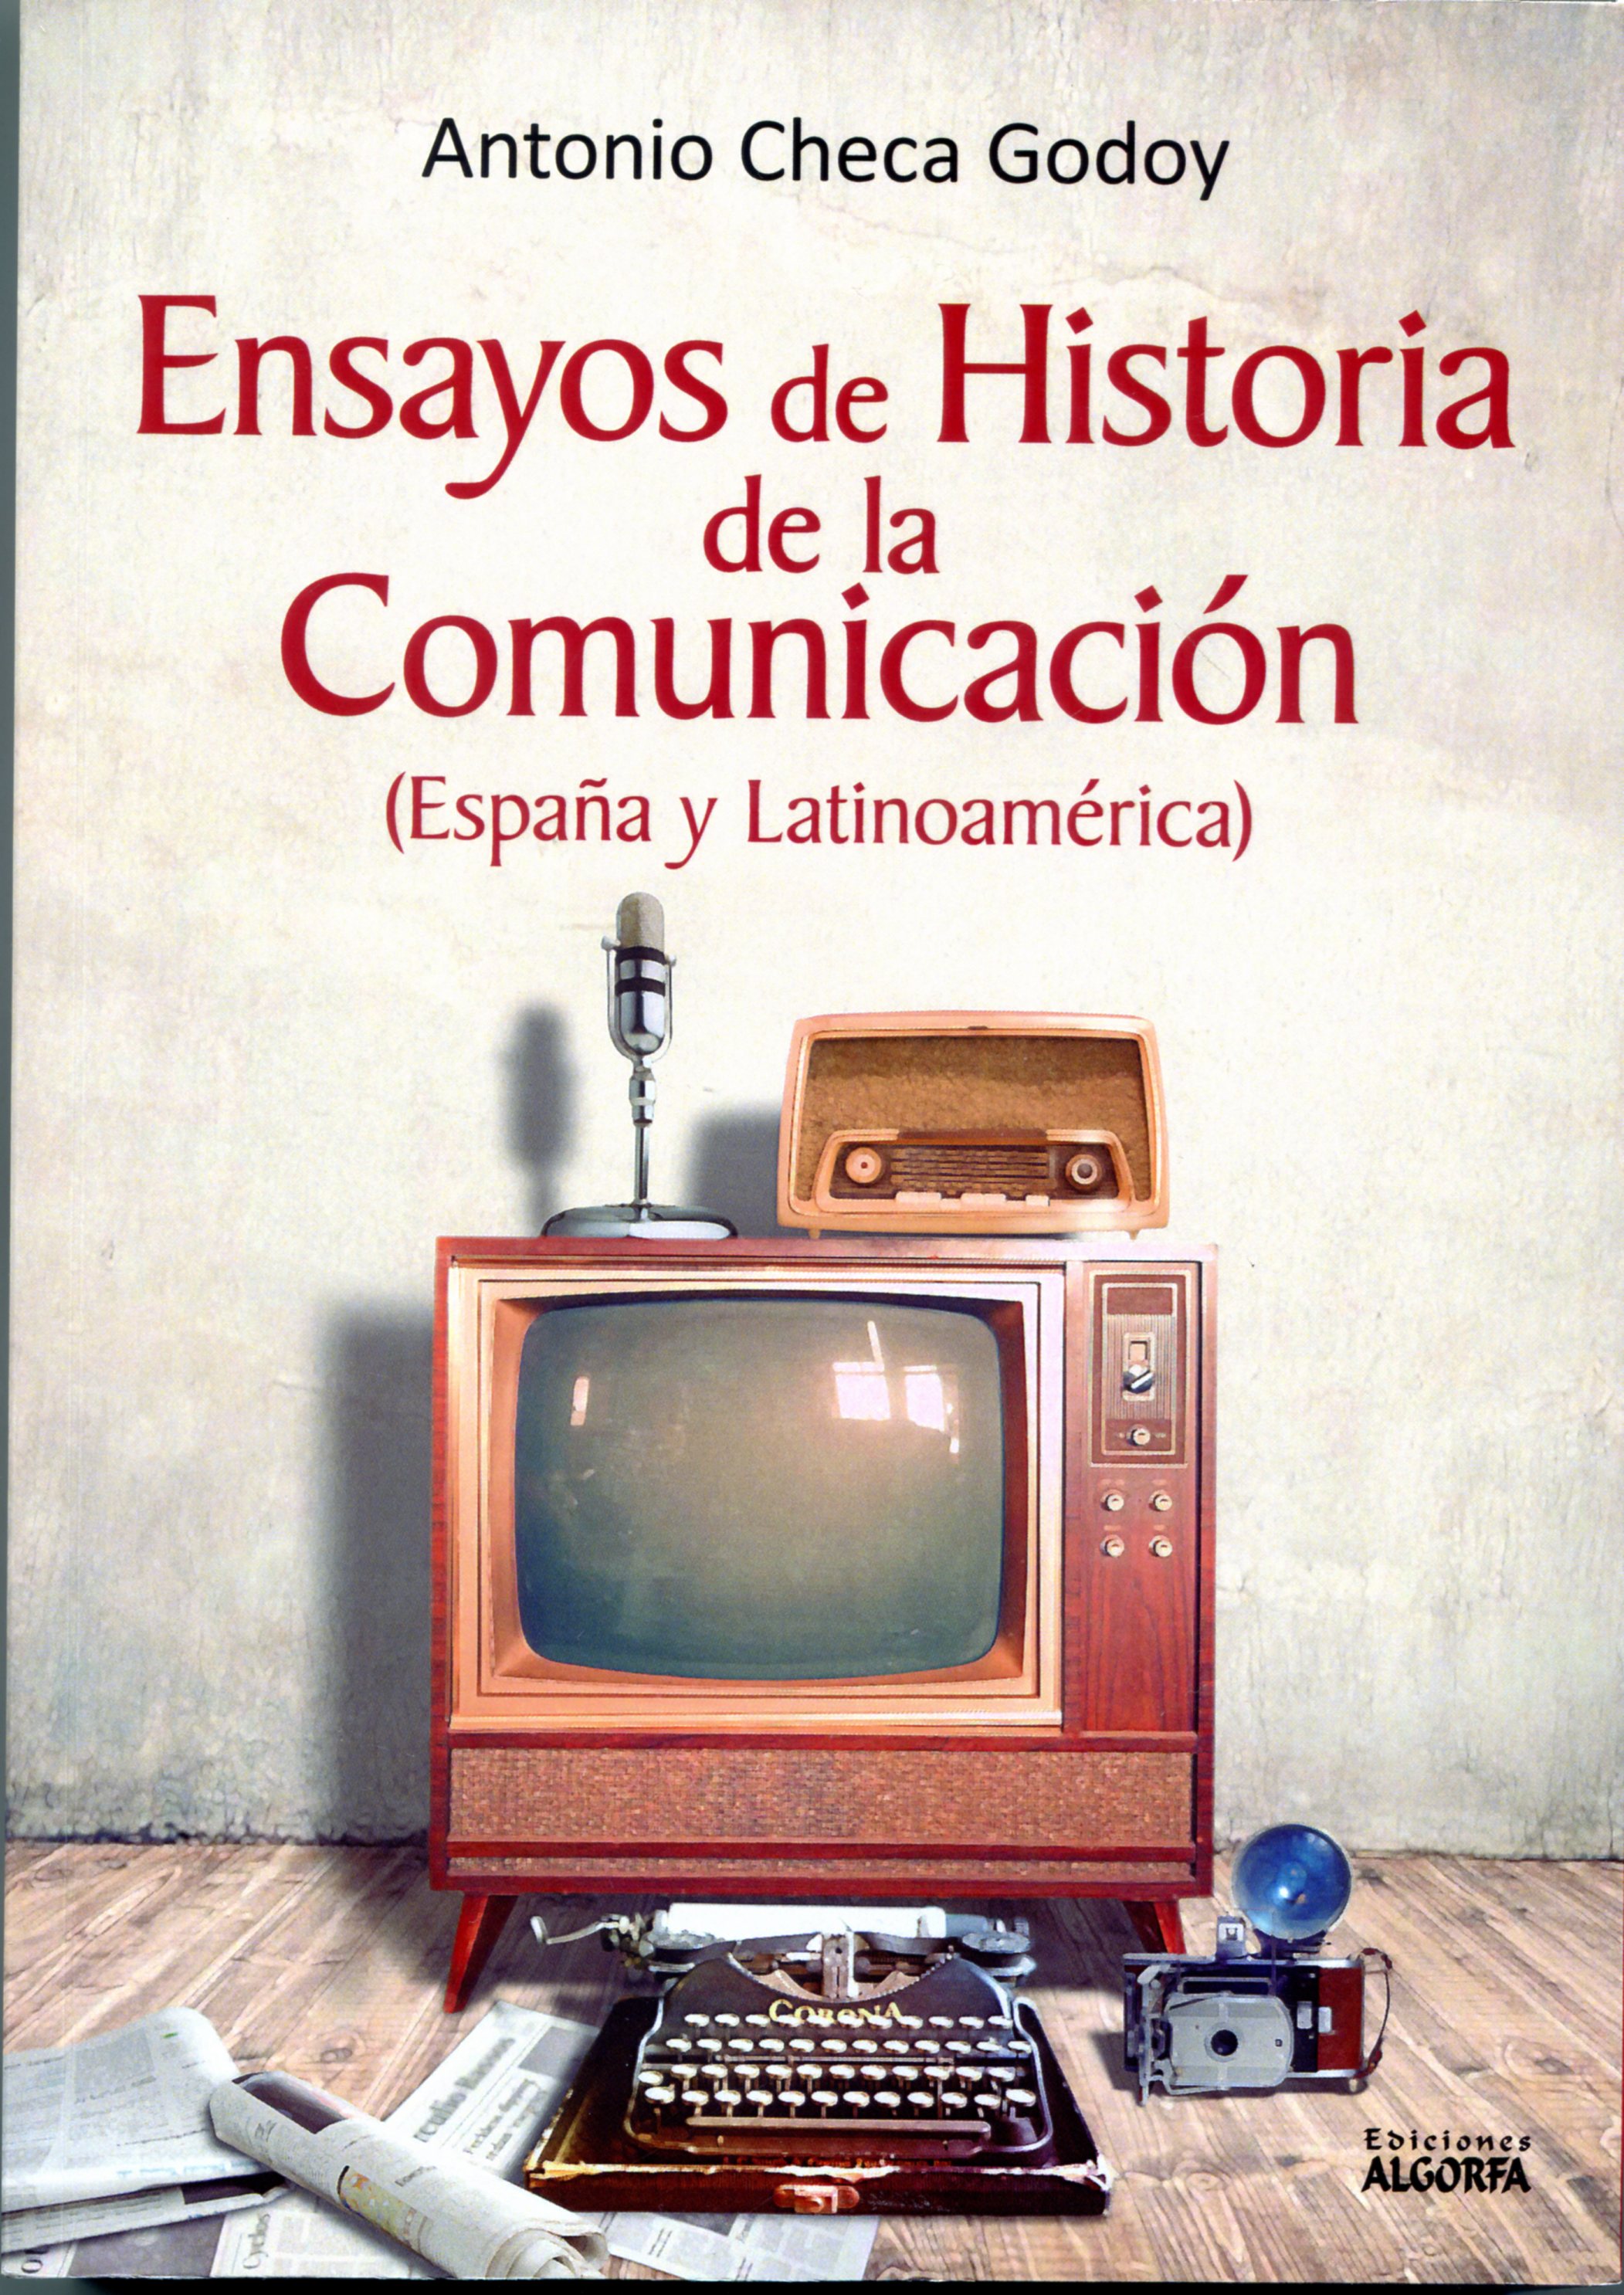 Imagen de portada del libro Ensayos de historia de la comunicación